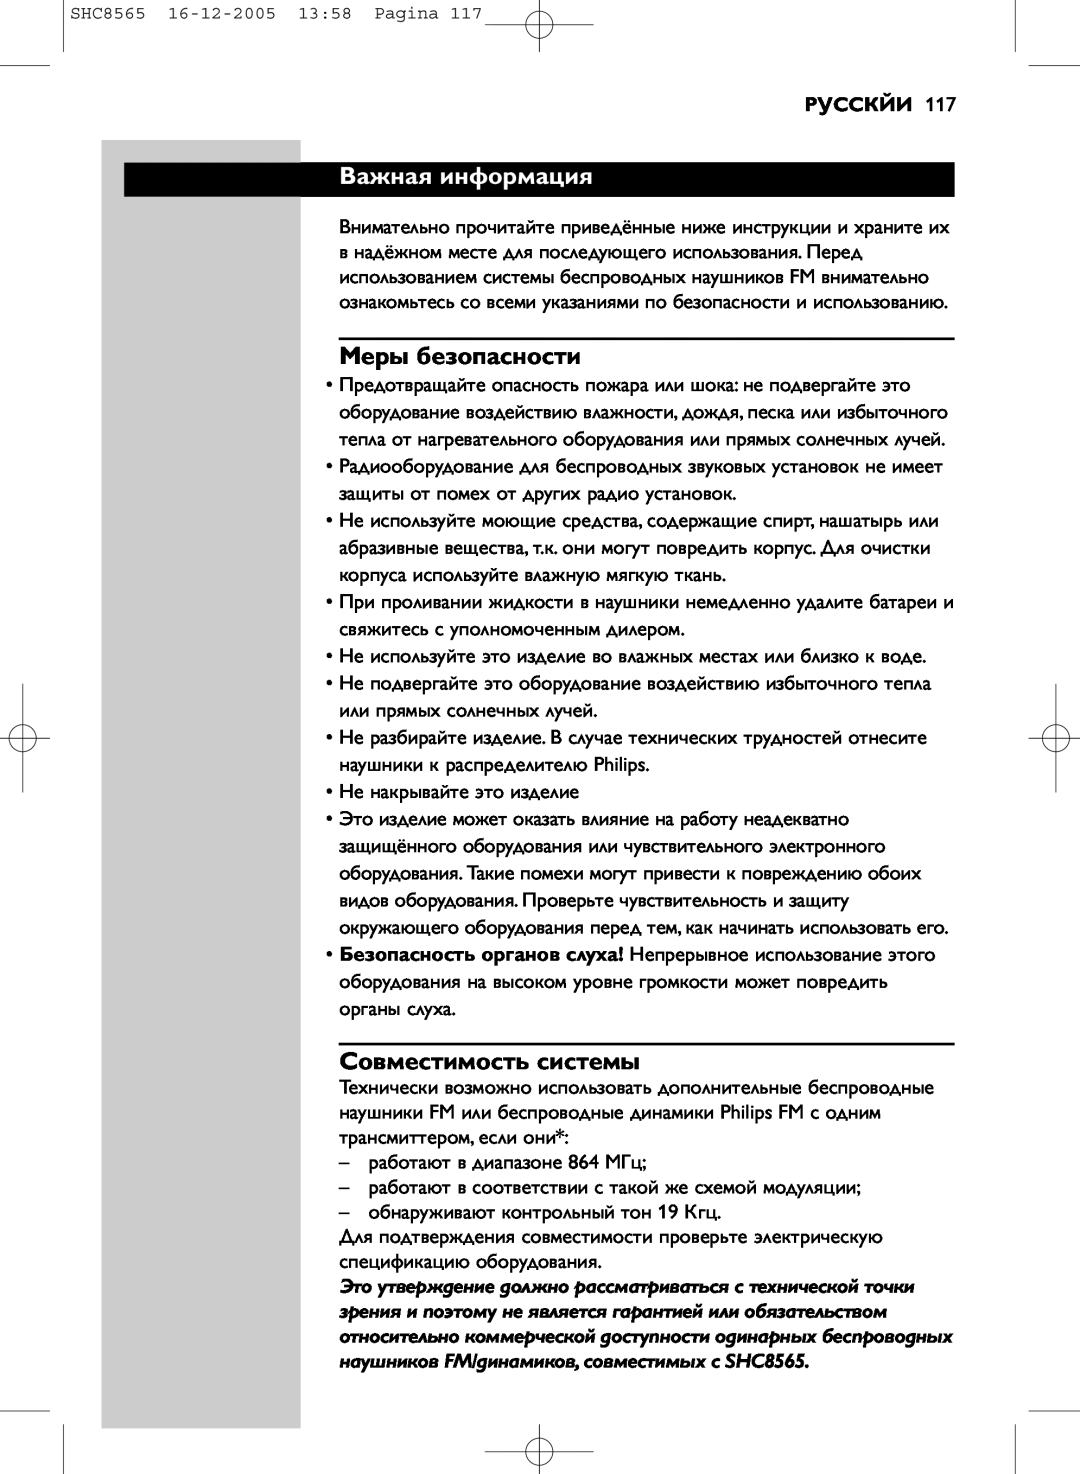 Philips SHC8565 manual Важная информация, Меры безопасности, Совместимость системы, Русскйи 